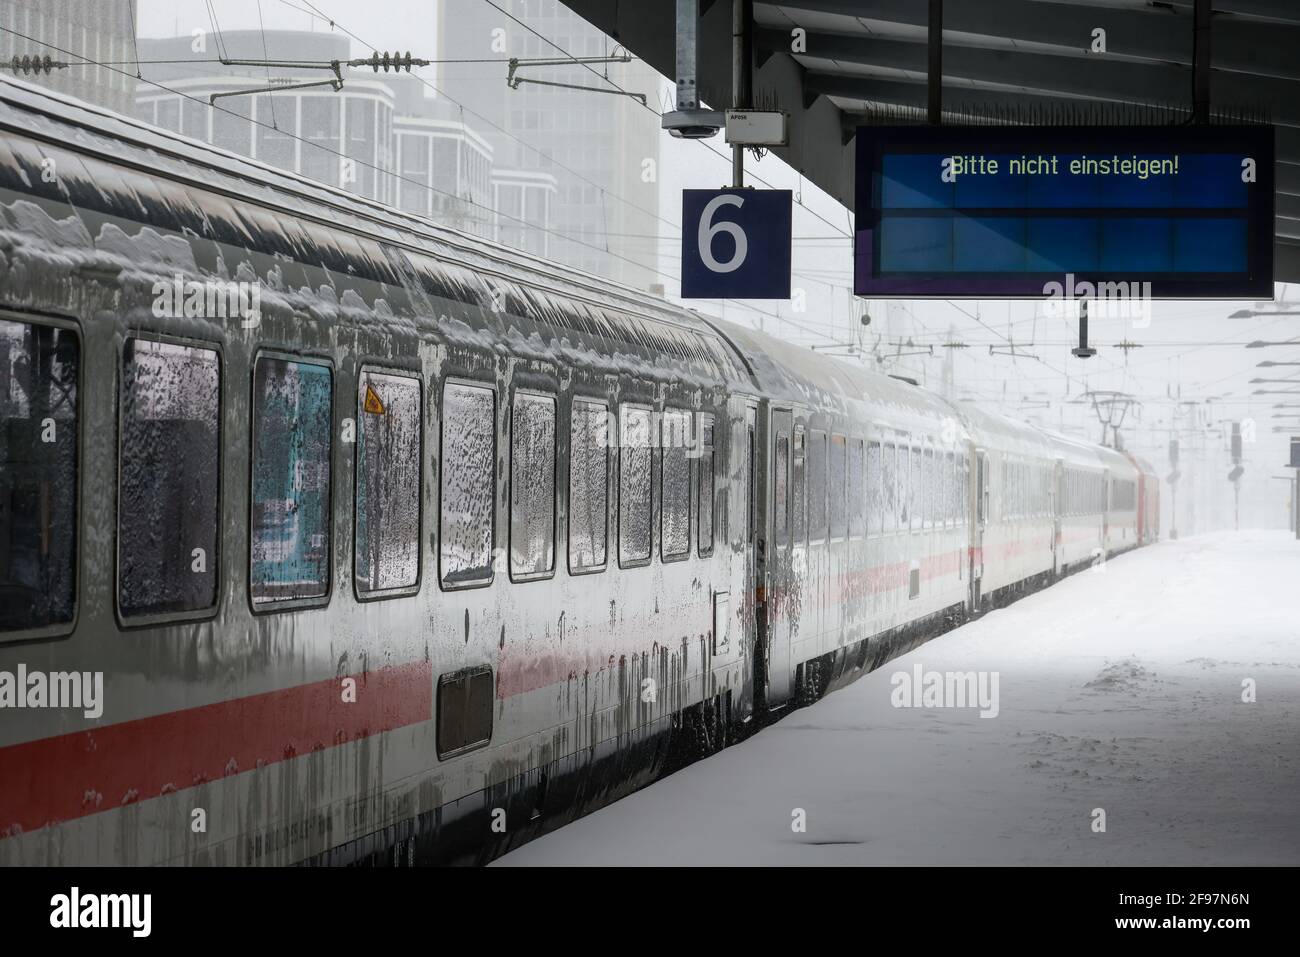 Essen, Renania del Norte-Westfalia, Alemania - Inicio del invierno En la zona de Ruhr, estación de tren de Essen, muchos trenes se retrasan o cancelan debido al hielo y la nieve. Foto de stock